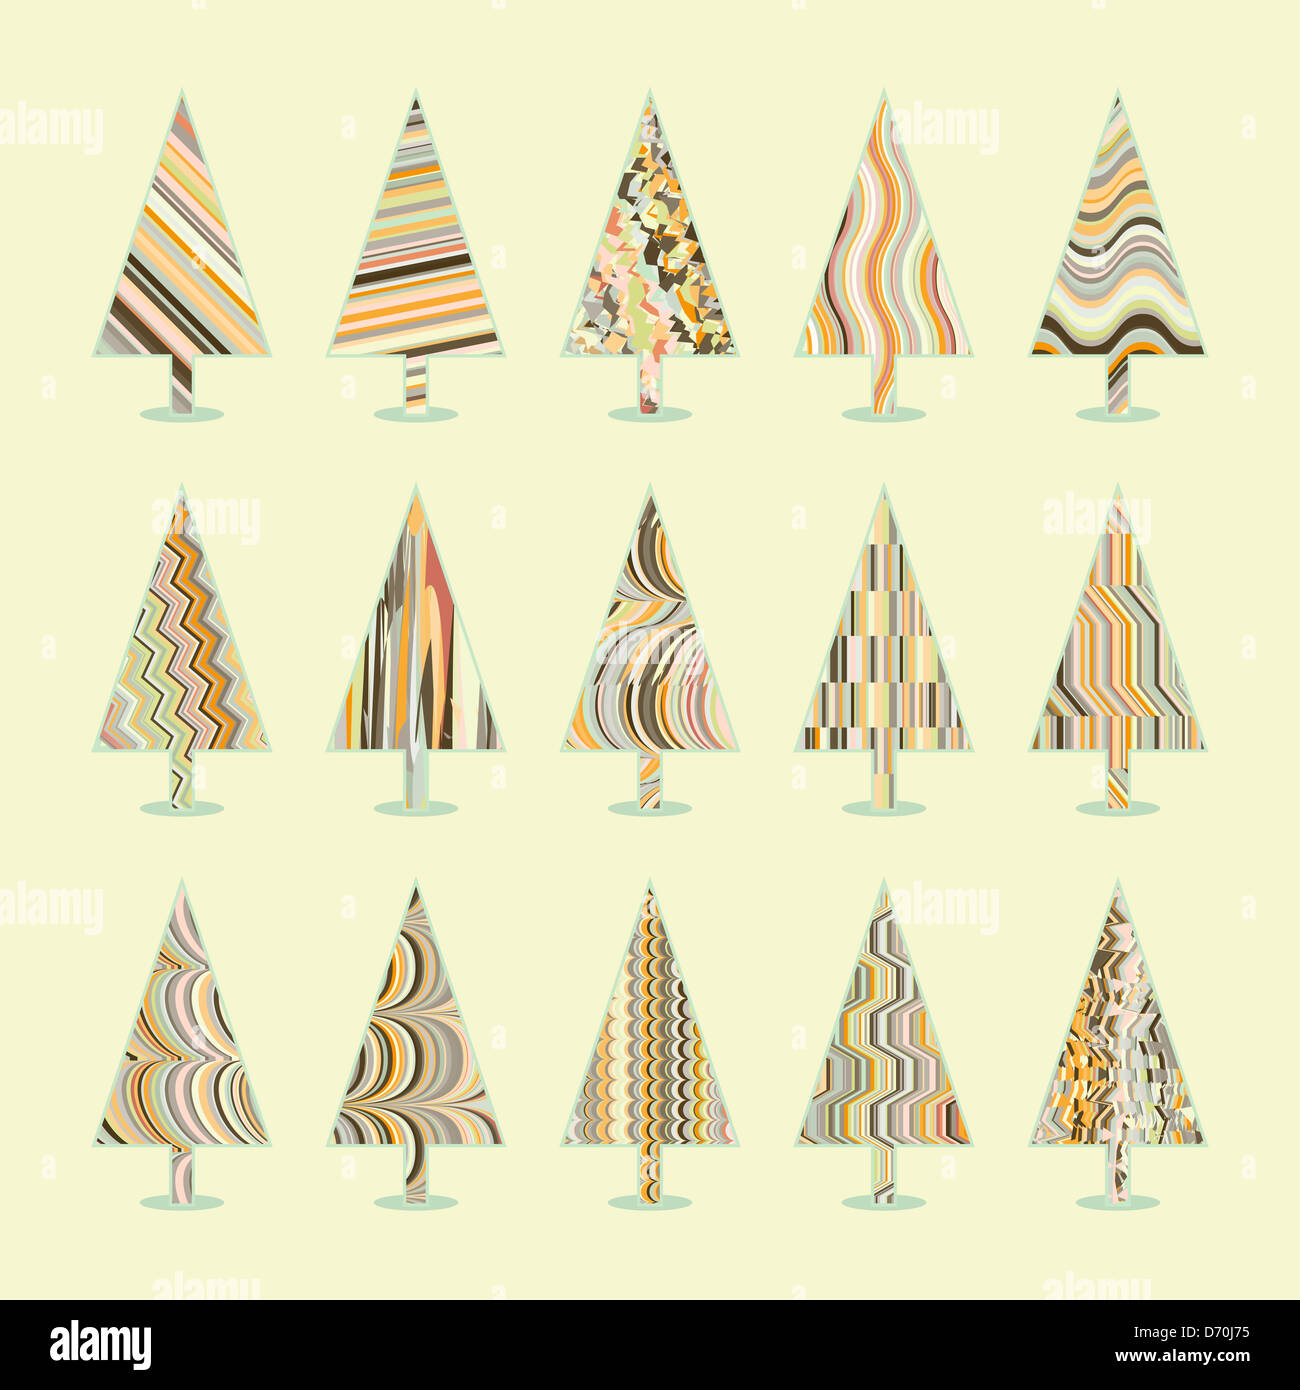 Ensemble d'arbres de Noël rétro 15 dessins ou modèles dans un seul fichier Banque D'Images